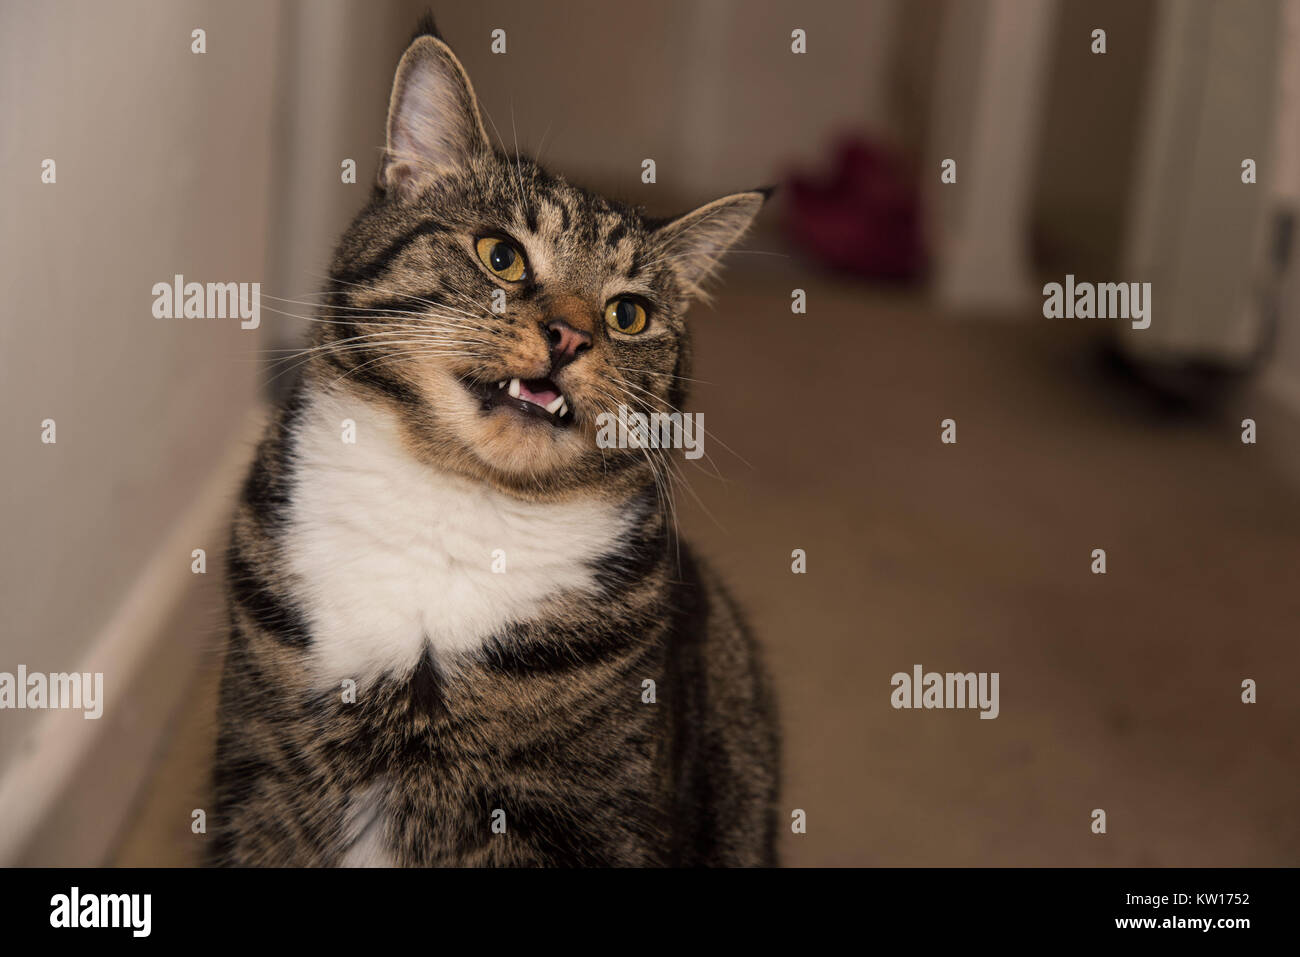 Eine schöne tabby Katze mit seinem Mund öffnen nach dem riechen etwas. cat  Zähne und Zunge auf zeigen, flauschige weiße Brust Pelz, Katze zu Hause und  gelben Augen Stockfotografie - Alamy